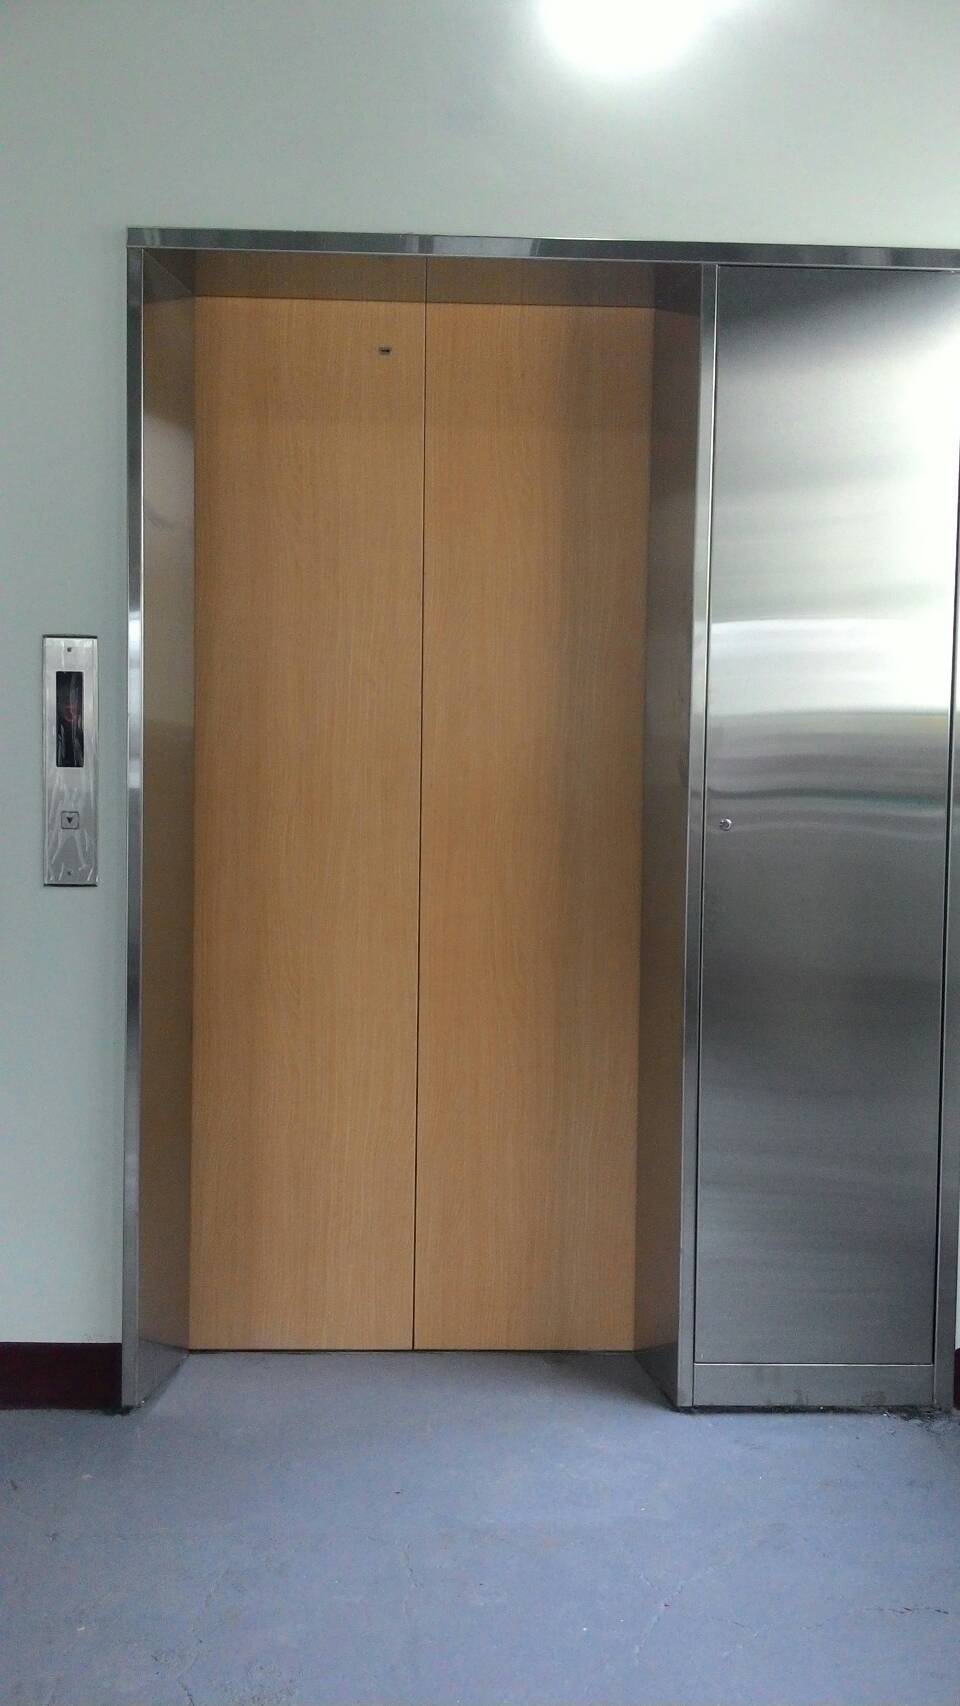 3樓3停無機房電梯